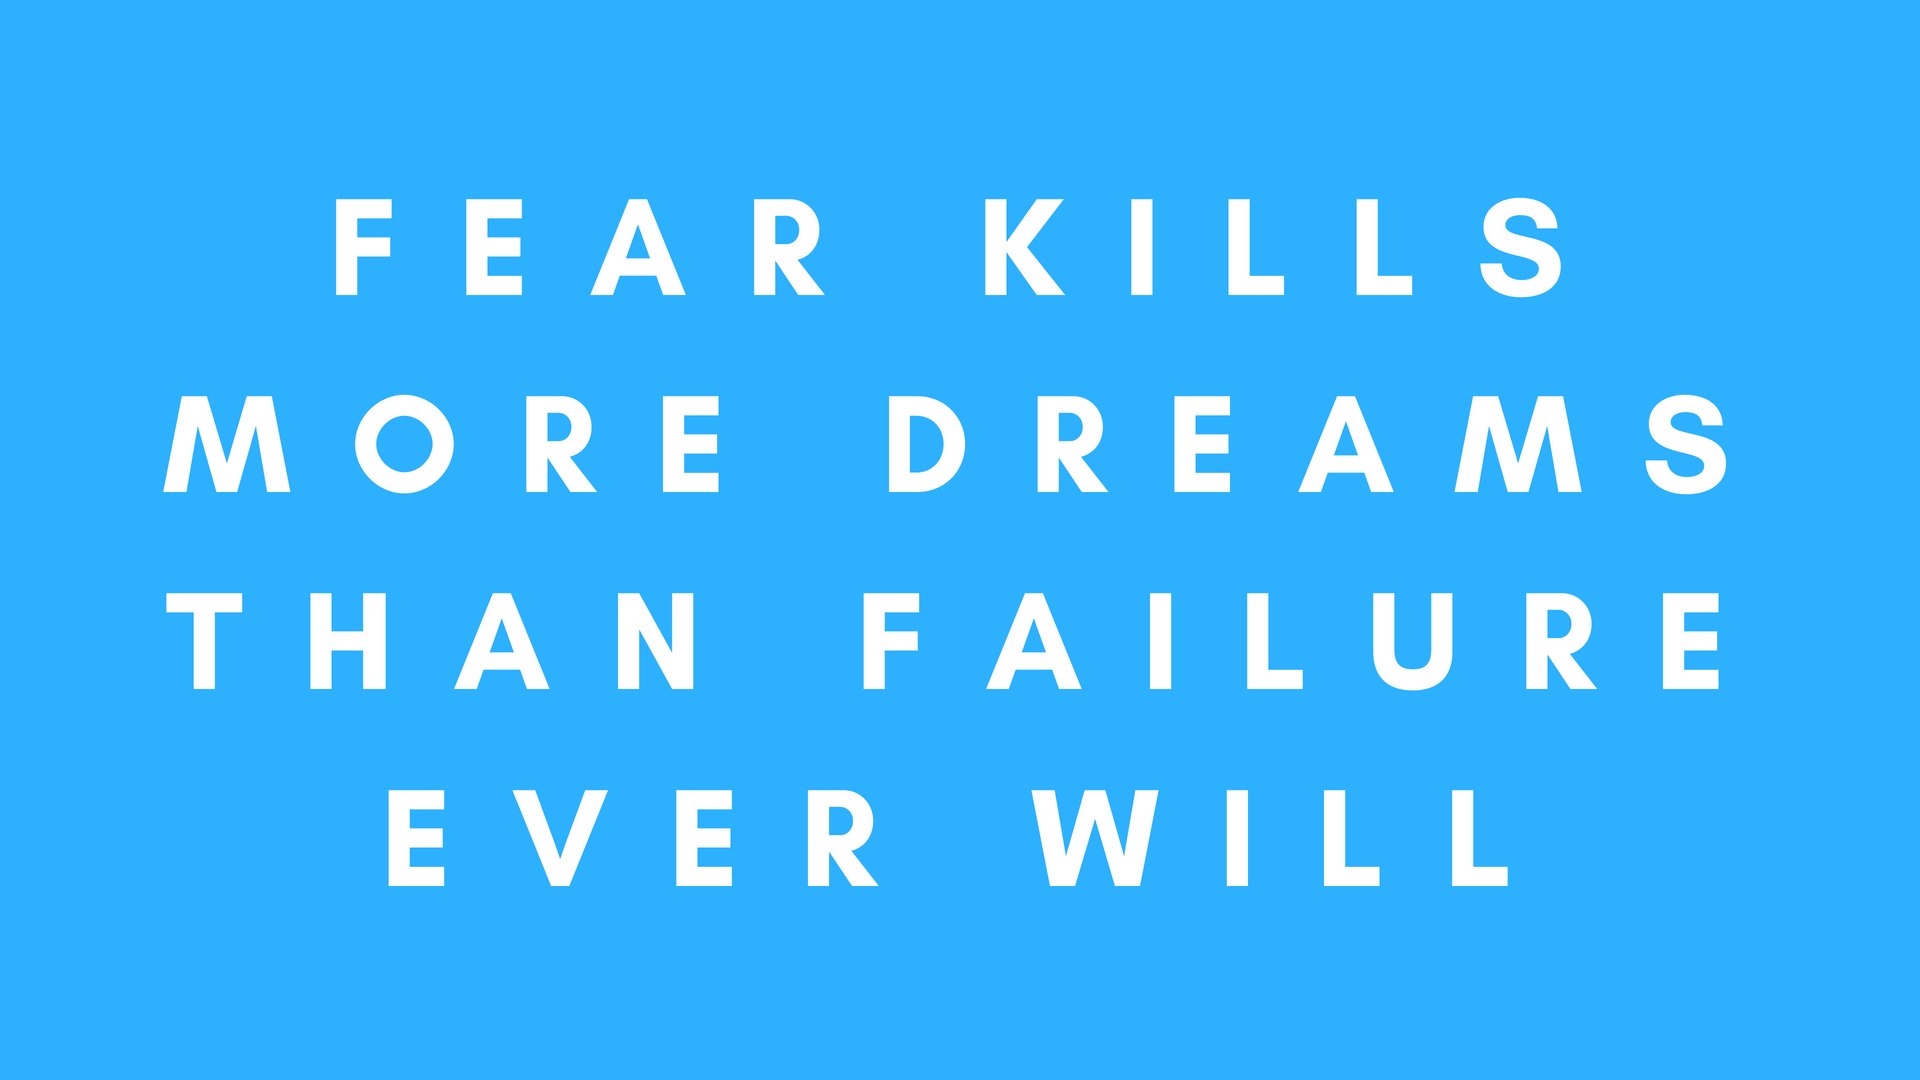 Fear kills more dreams than failure